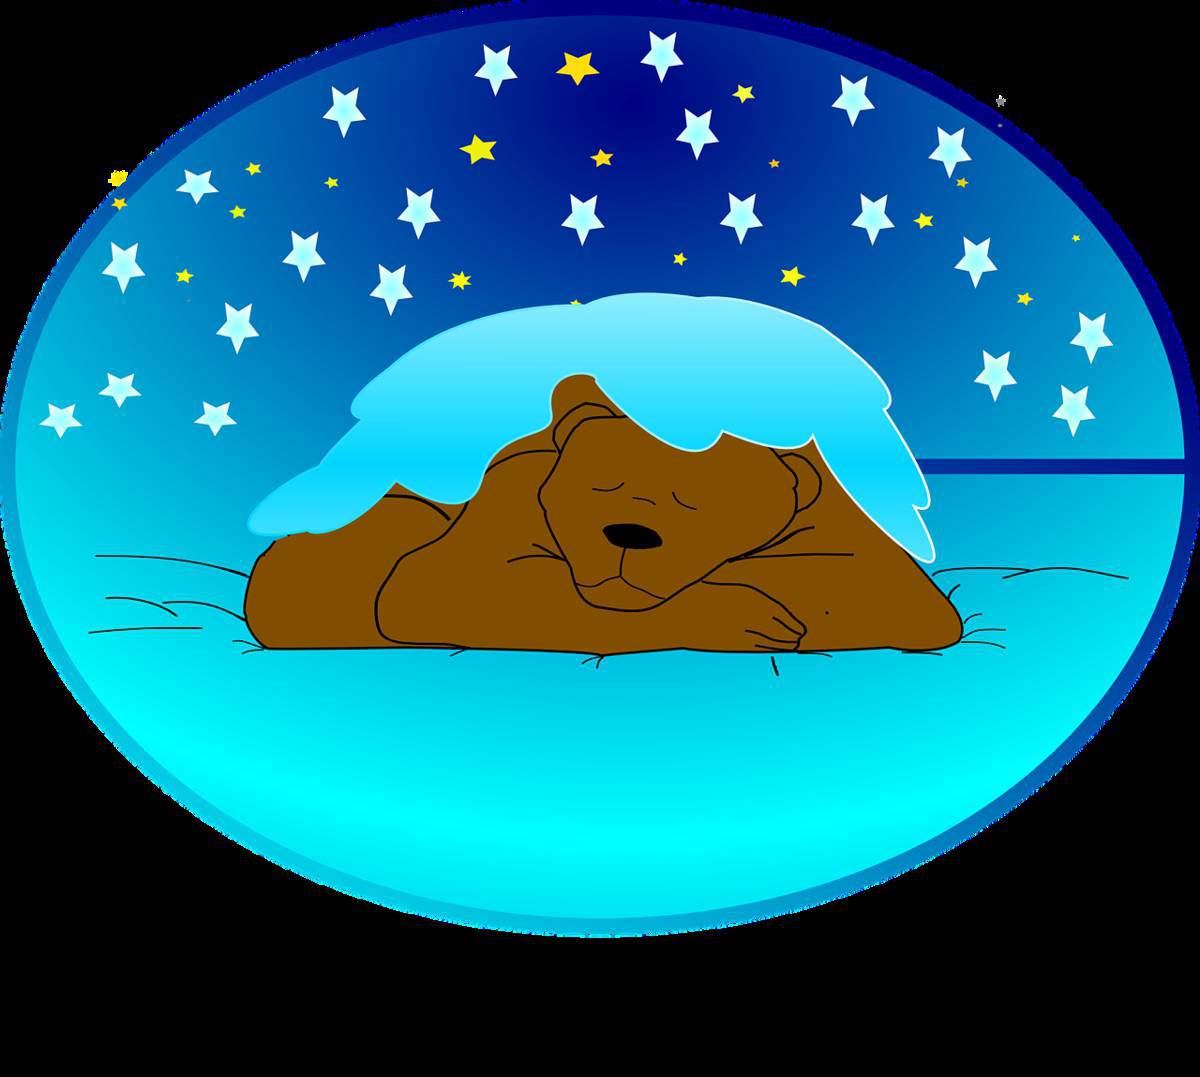 Медведь спит в берлоге #35